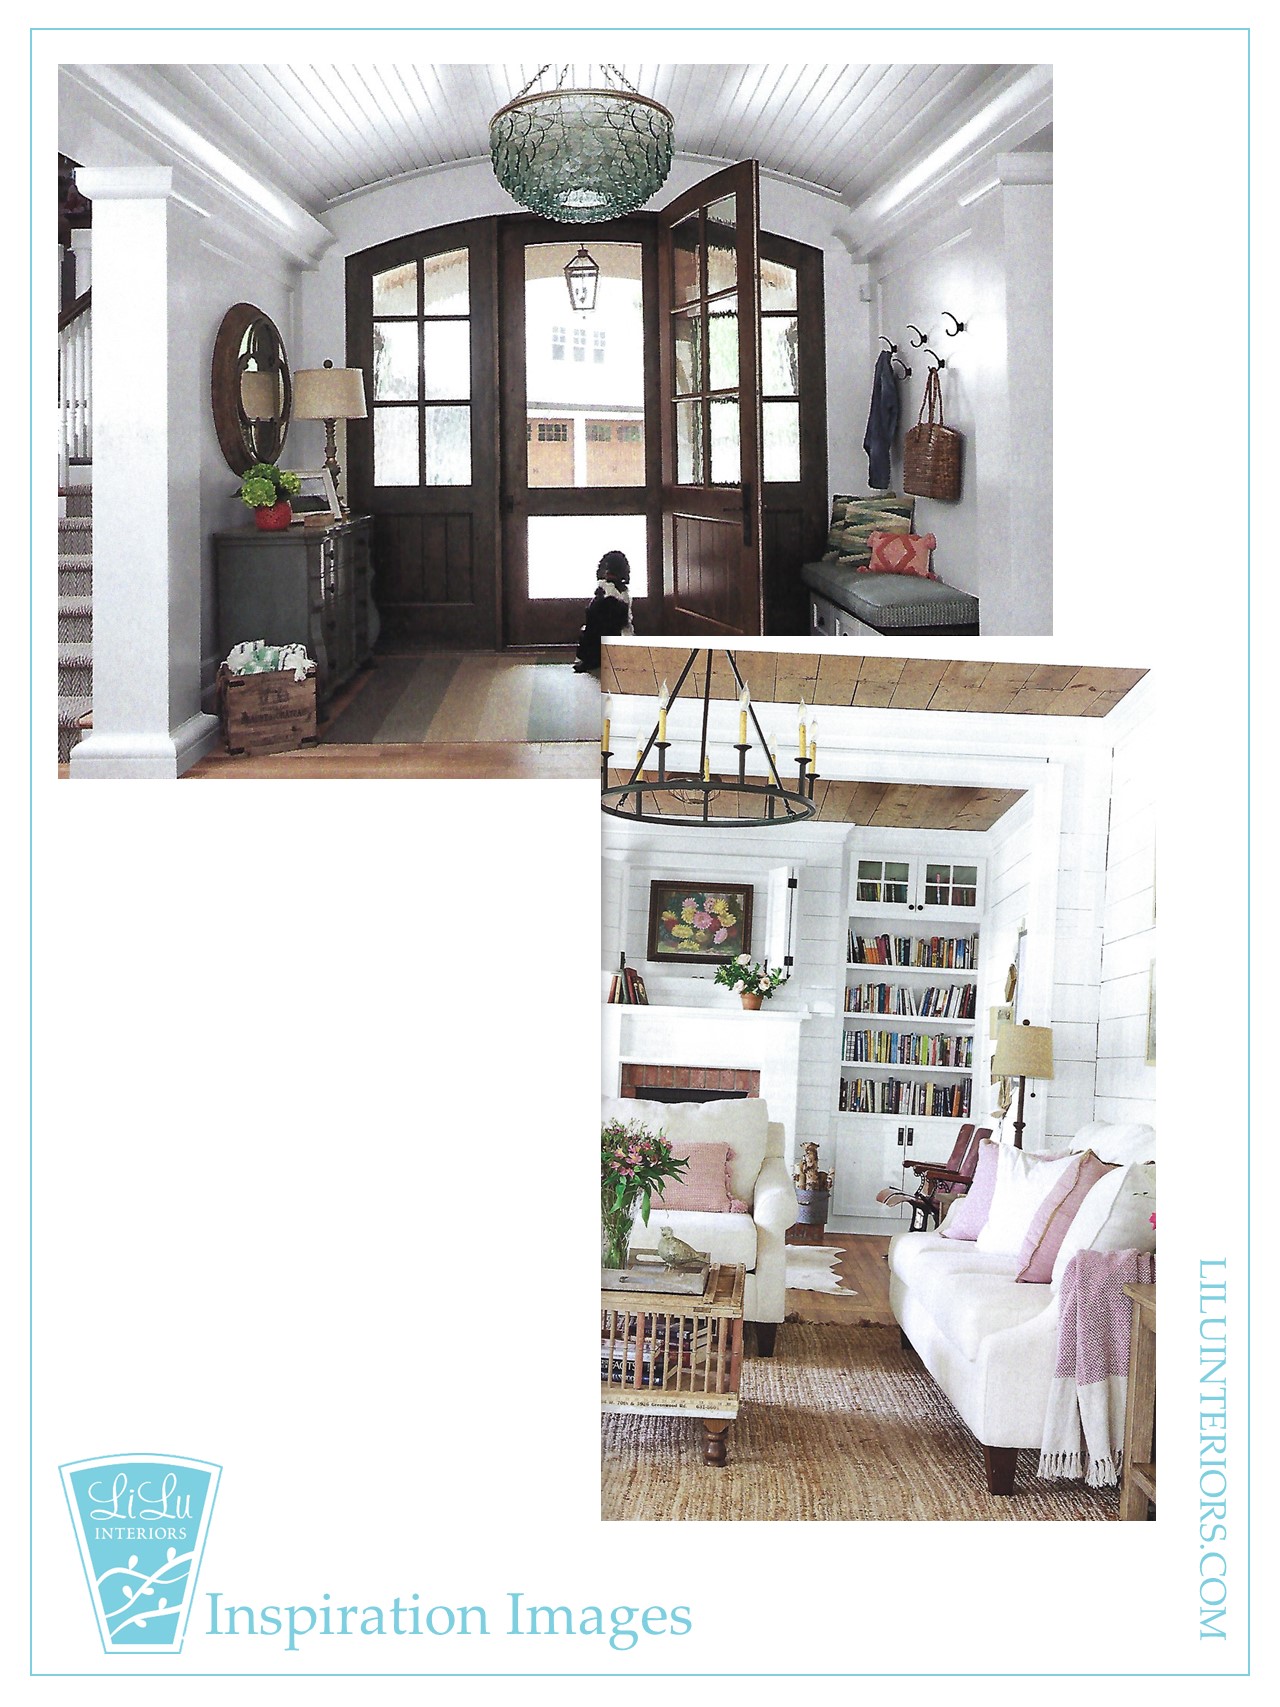 design-process-how-to-design-dream-home-interior-designer-55405.jpeg